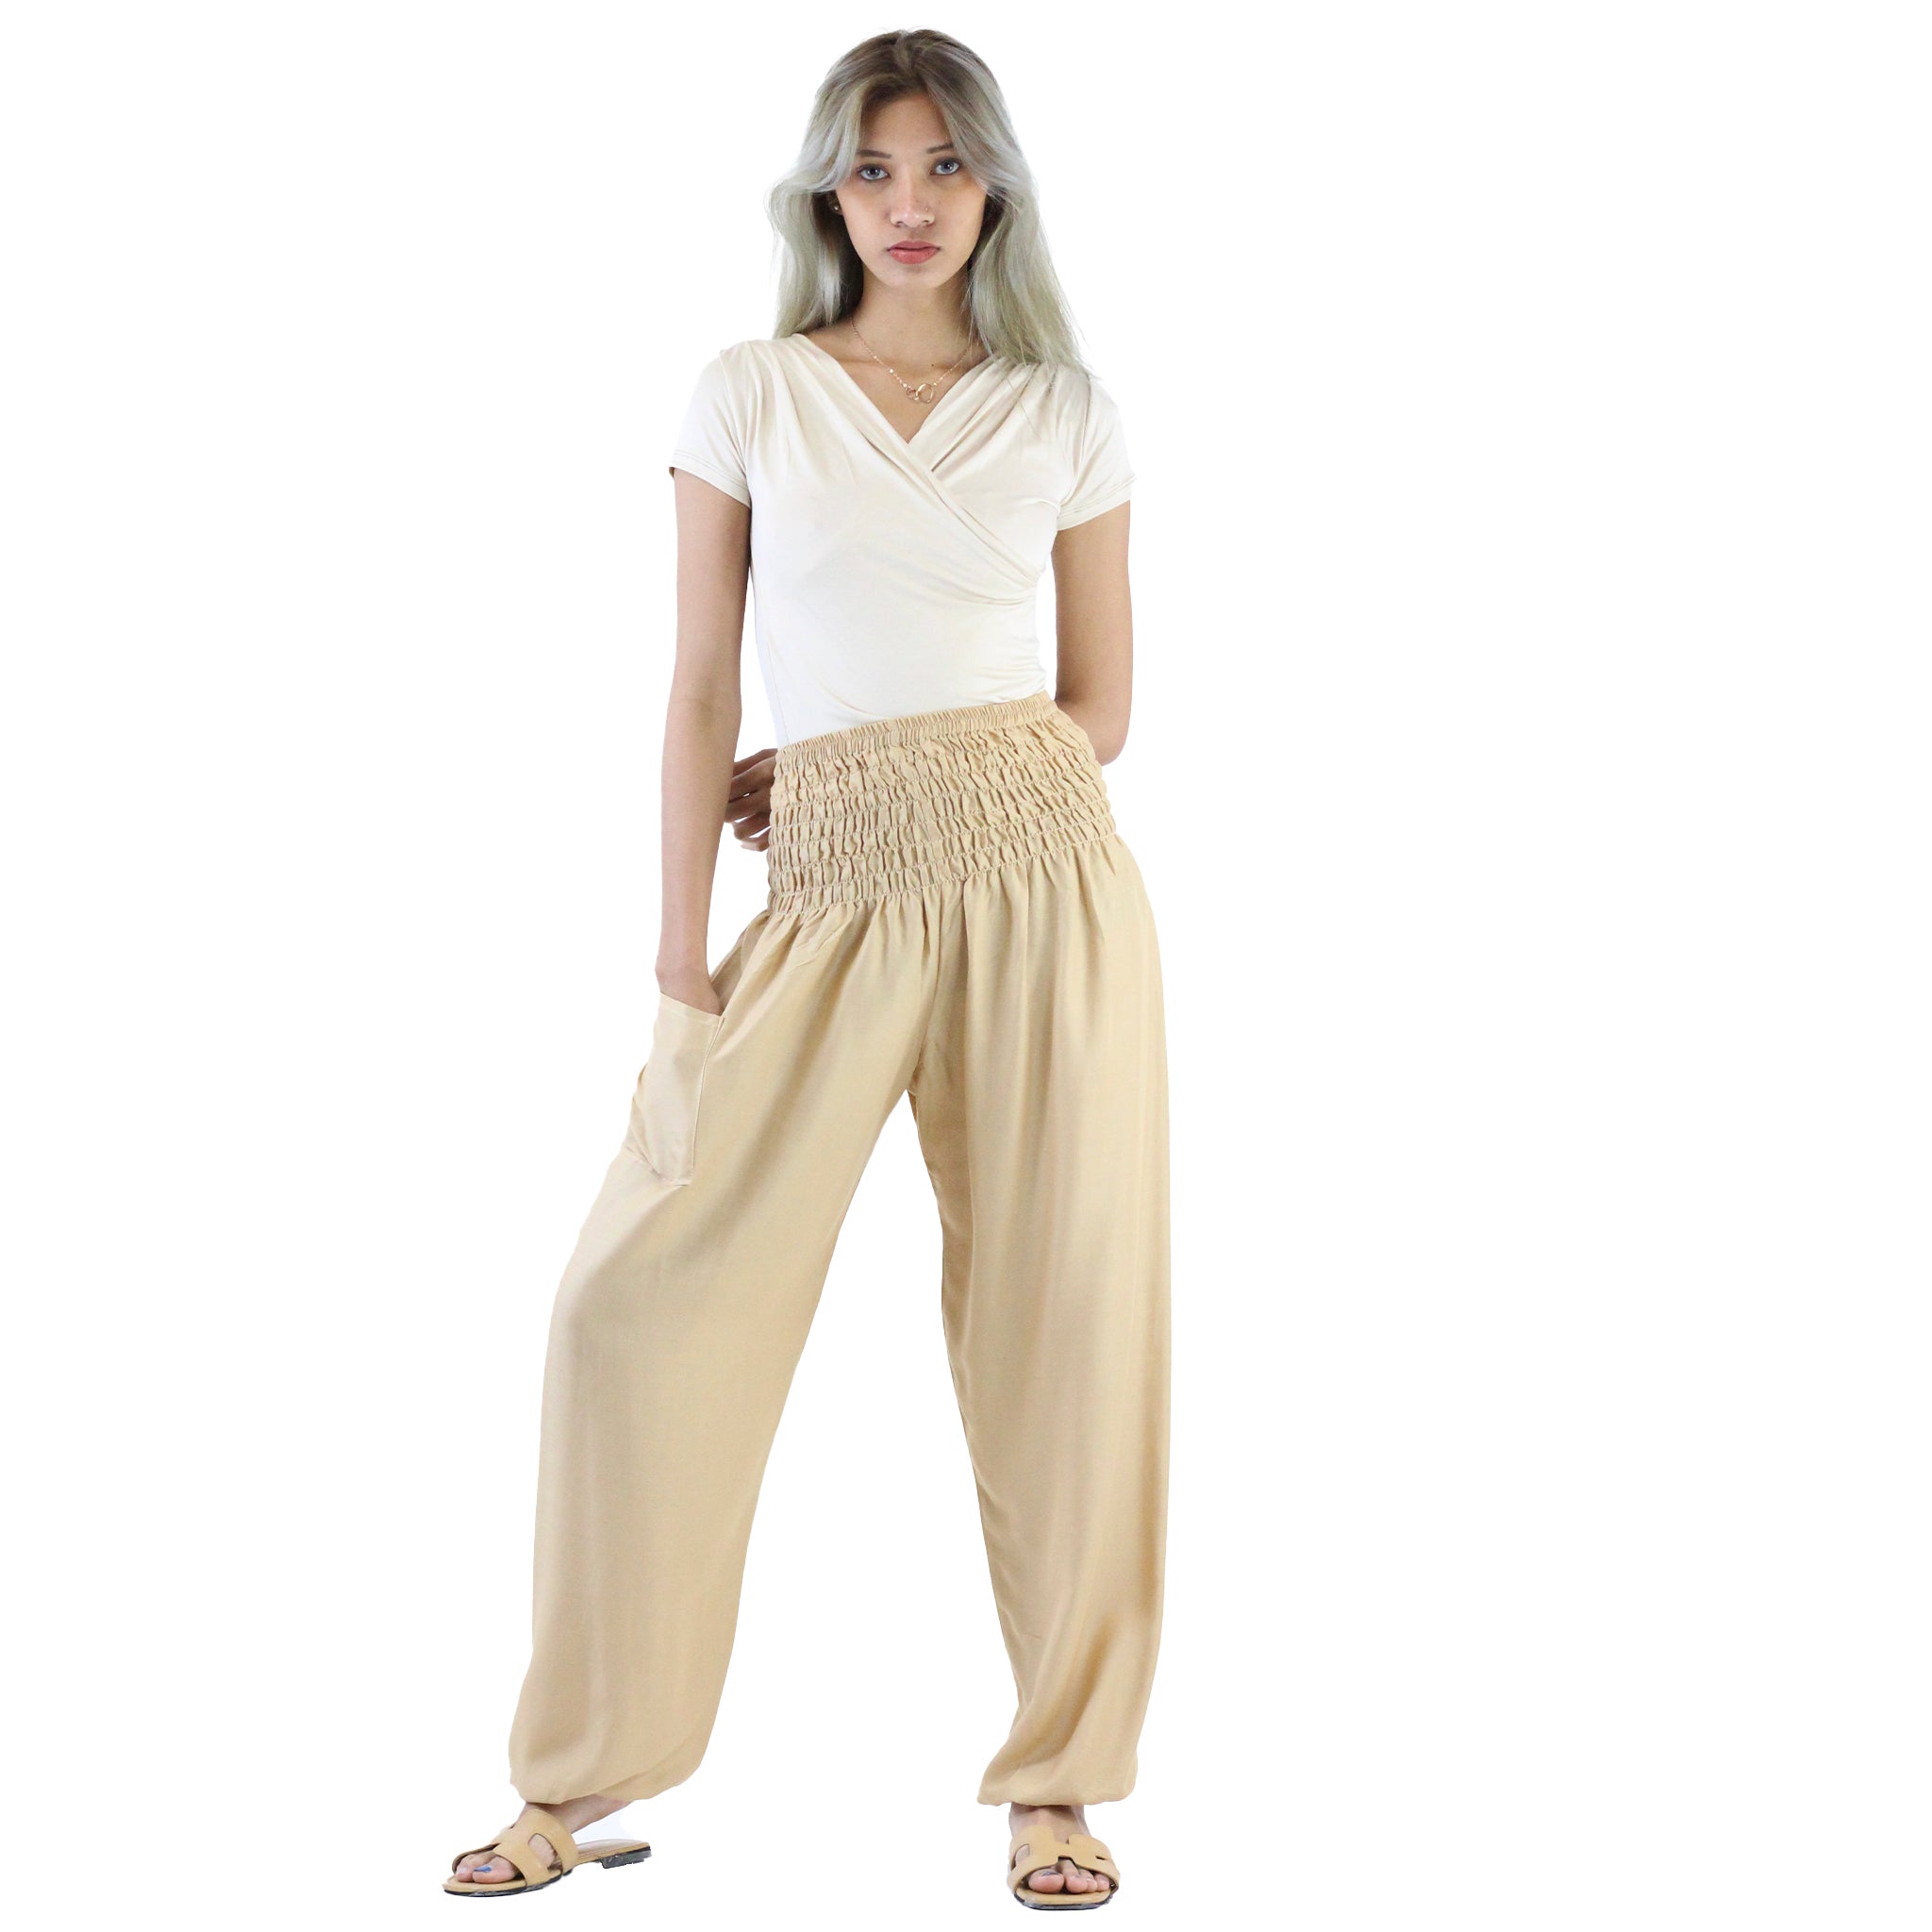 Beige Colour Double Lace Pants – The Pajama Factory